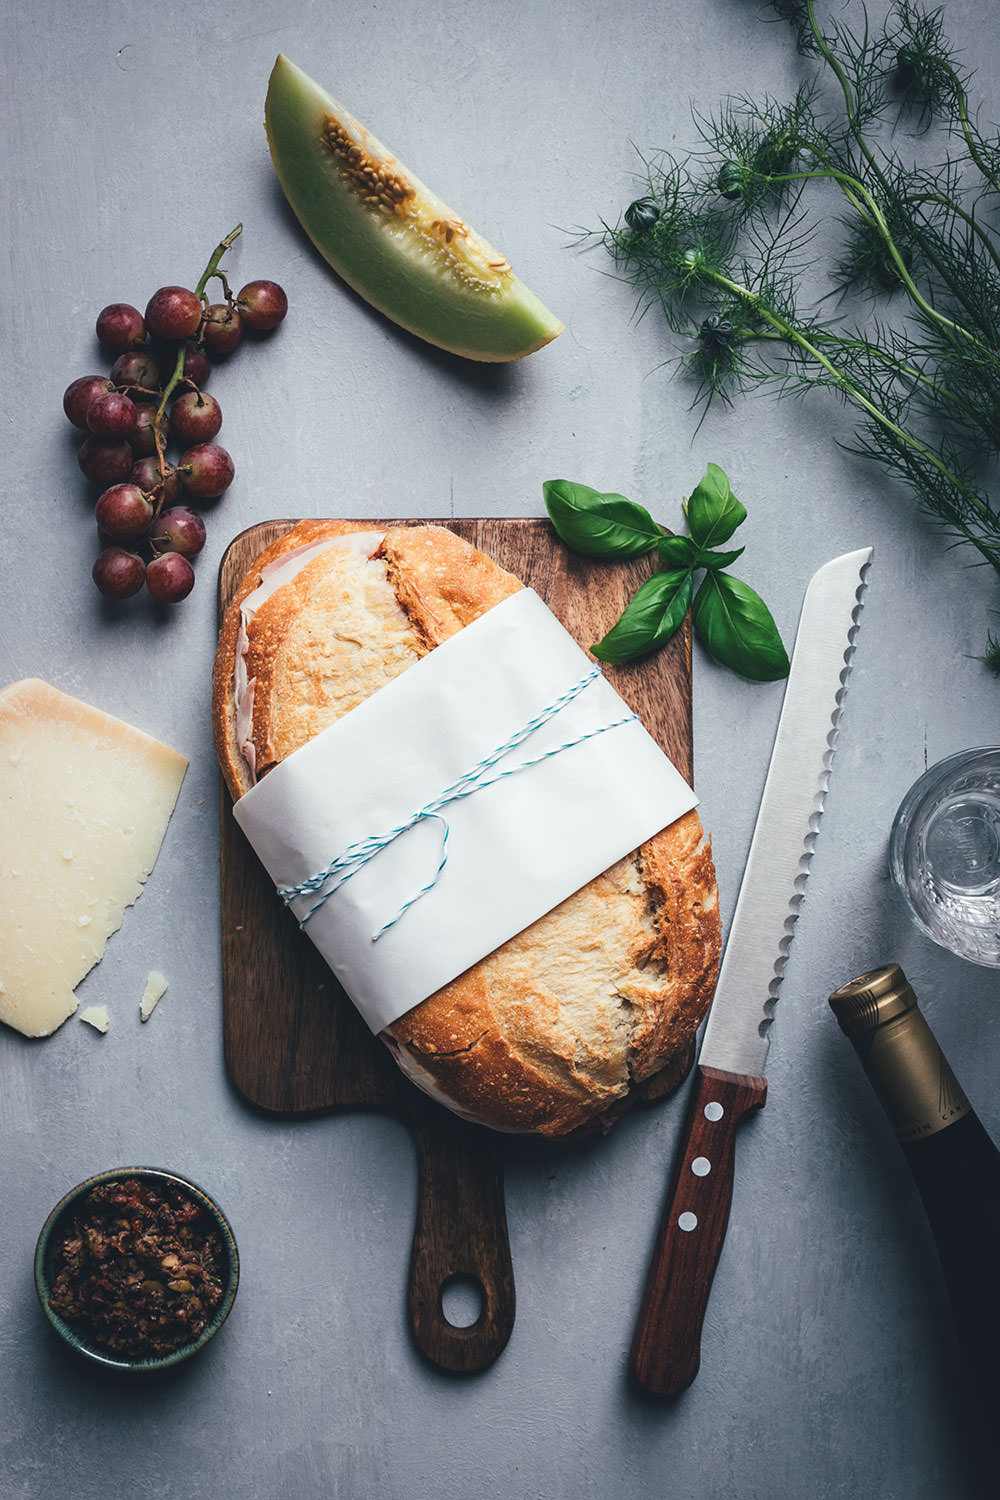 Rezept für italienisches Sandwich "Muffuletta Style" zum Picknick wie in Italien | gepresstes Weißbrot mit einer Füllung aus Oliven-Tapenade, Prosciutto Cotto, Salame Milanese, Provolone, Mozzarella und gegrillter Paprika | moeyskitchen.com #sandwich #panini #picknick #italienisch #muffuletta #brot #worlpicknickday #belegtesbrot #schnittchen #rezepte #foodblogger